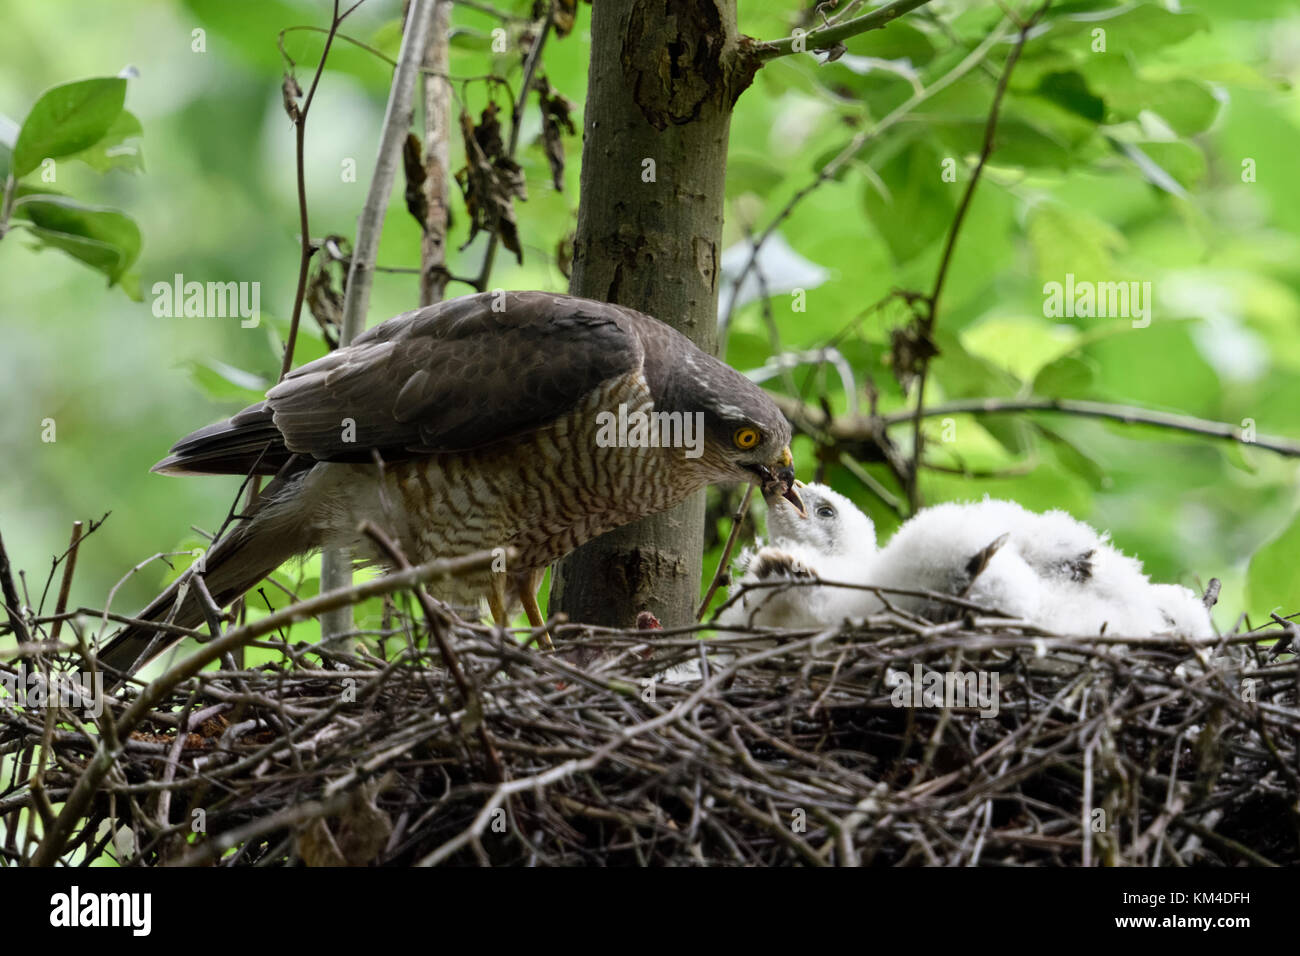 Fauve / sperber ( Accipiter nisus ), femme debout sur son nid d'aigle, nourrir ses petits, les poussins, de la faune, de l'Europe. Banque D'Images